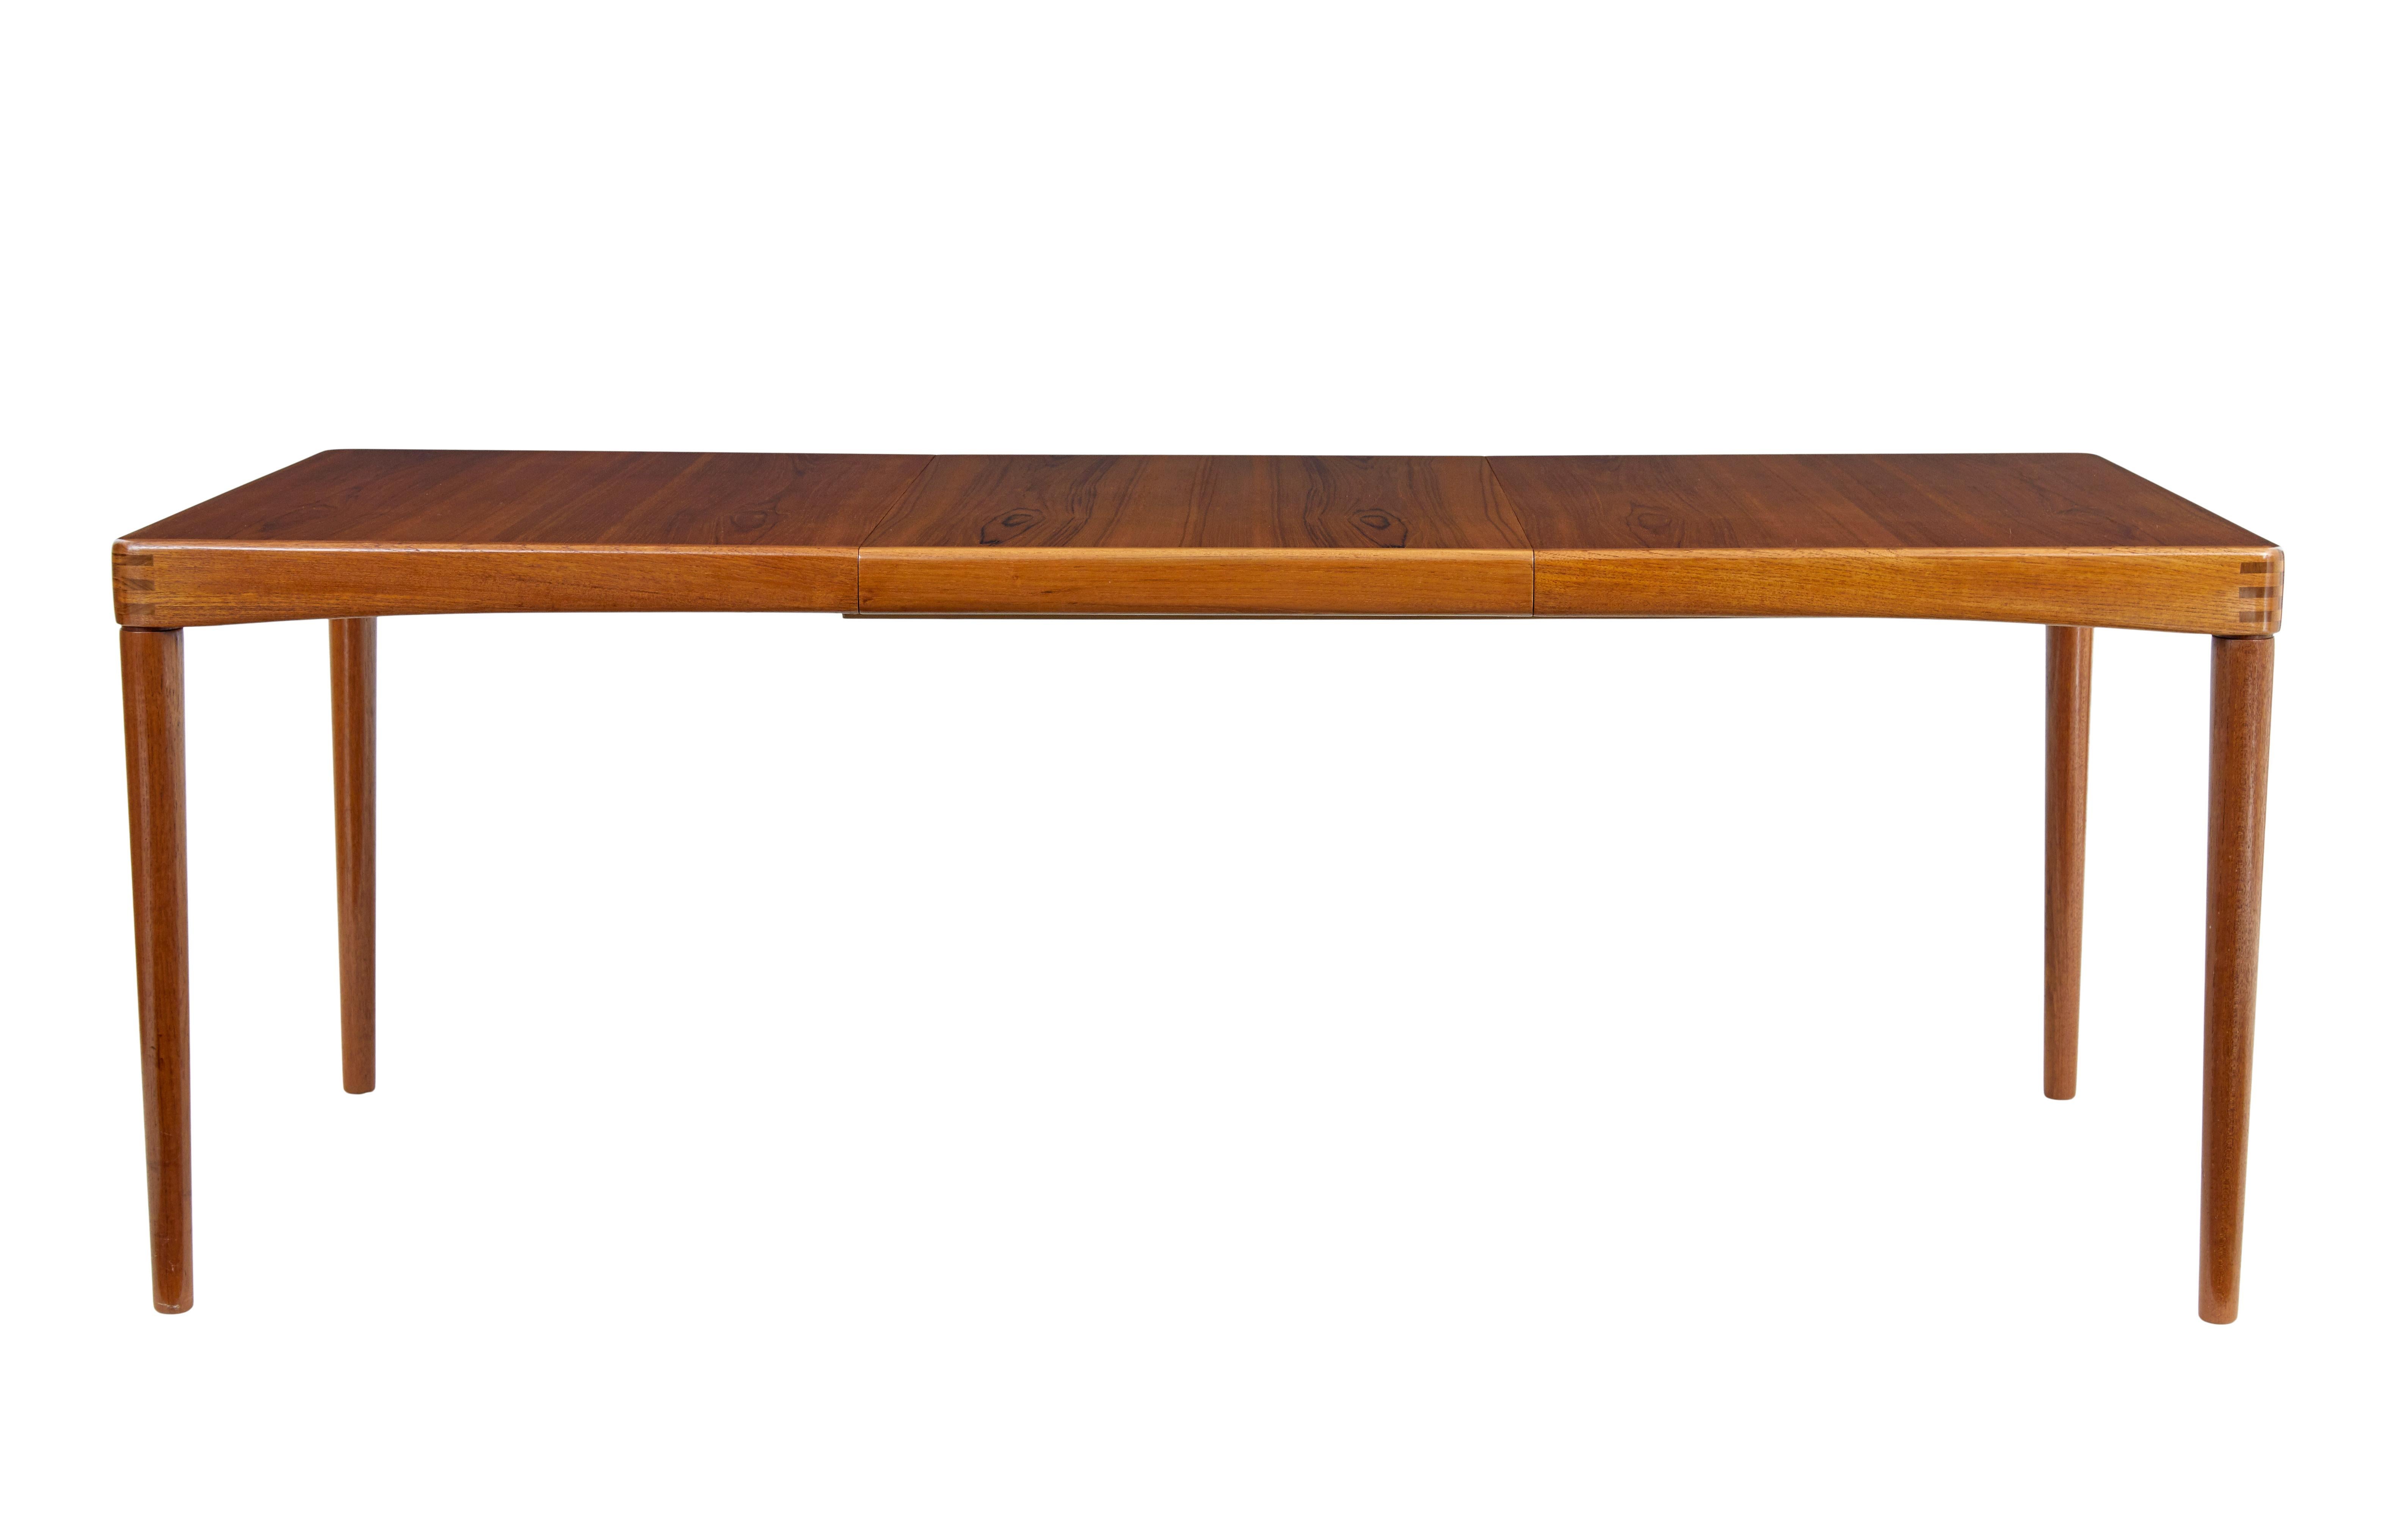 Dänischer Teak-Esstisch aus der Mitte des Jahrhunderts von H.W.Klein für Bramin um 1960.

Hochwertiger ausziehbarer Esstisch des norwegischen Designers H.W.Klein, den er für Bramin in Dänemark entworfen hat.

Ein schlichter, aber eleganter Tisch,